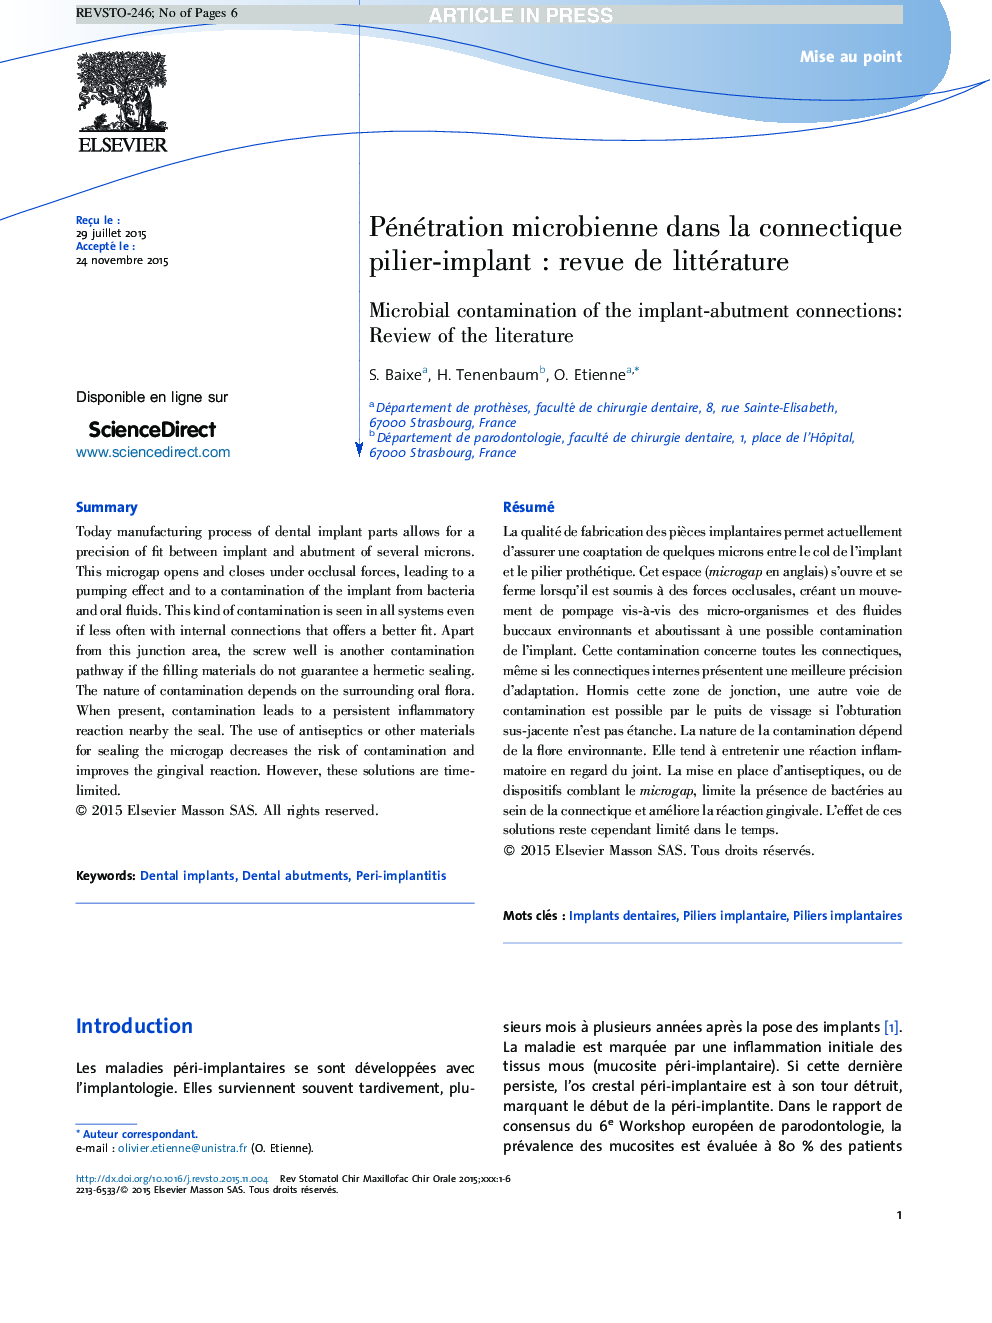 Pénétration microbienne dans la connectique pilier-implantÂ : revue de littérature